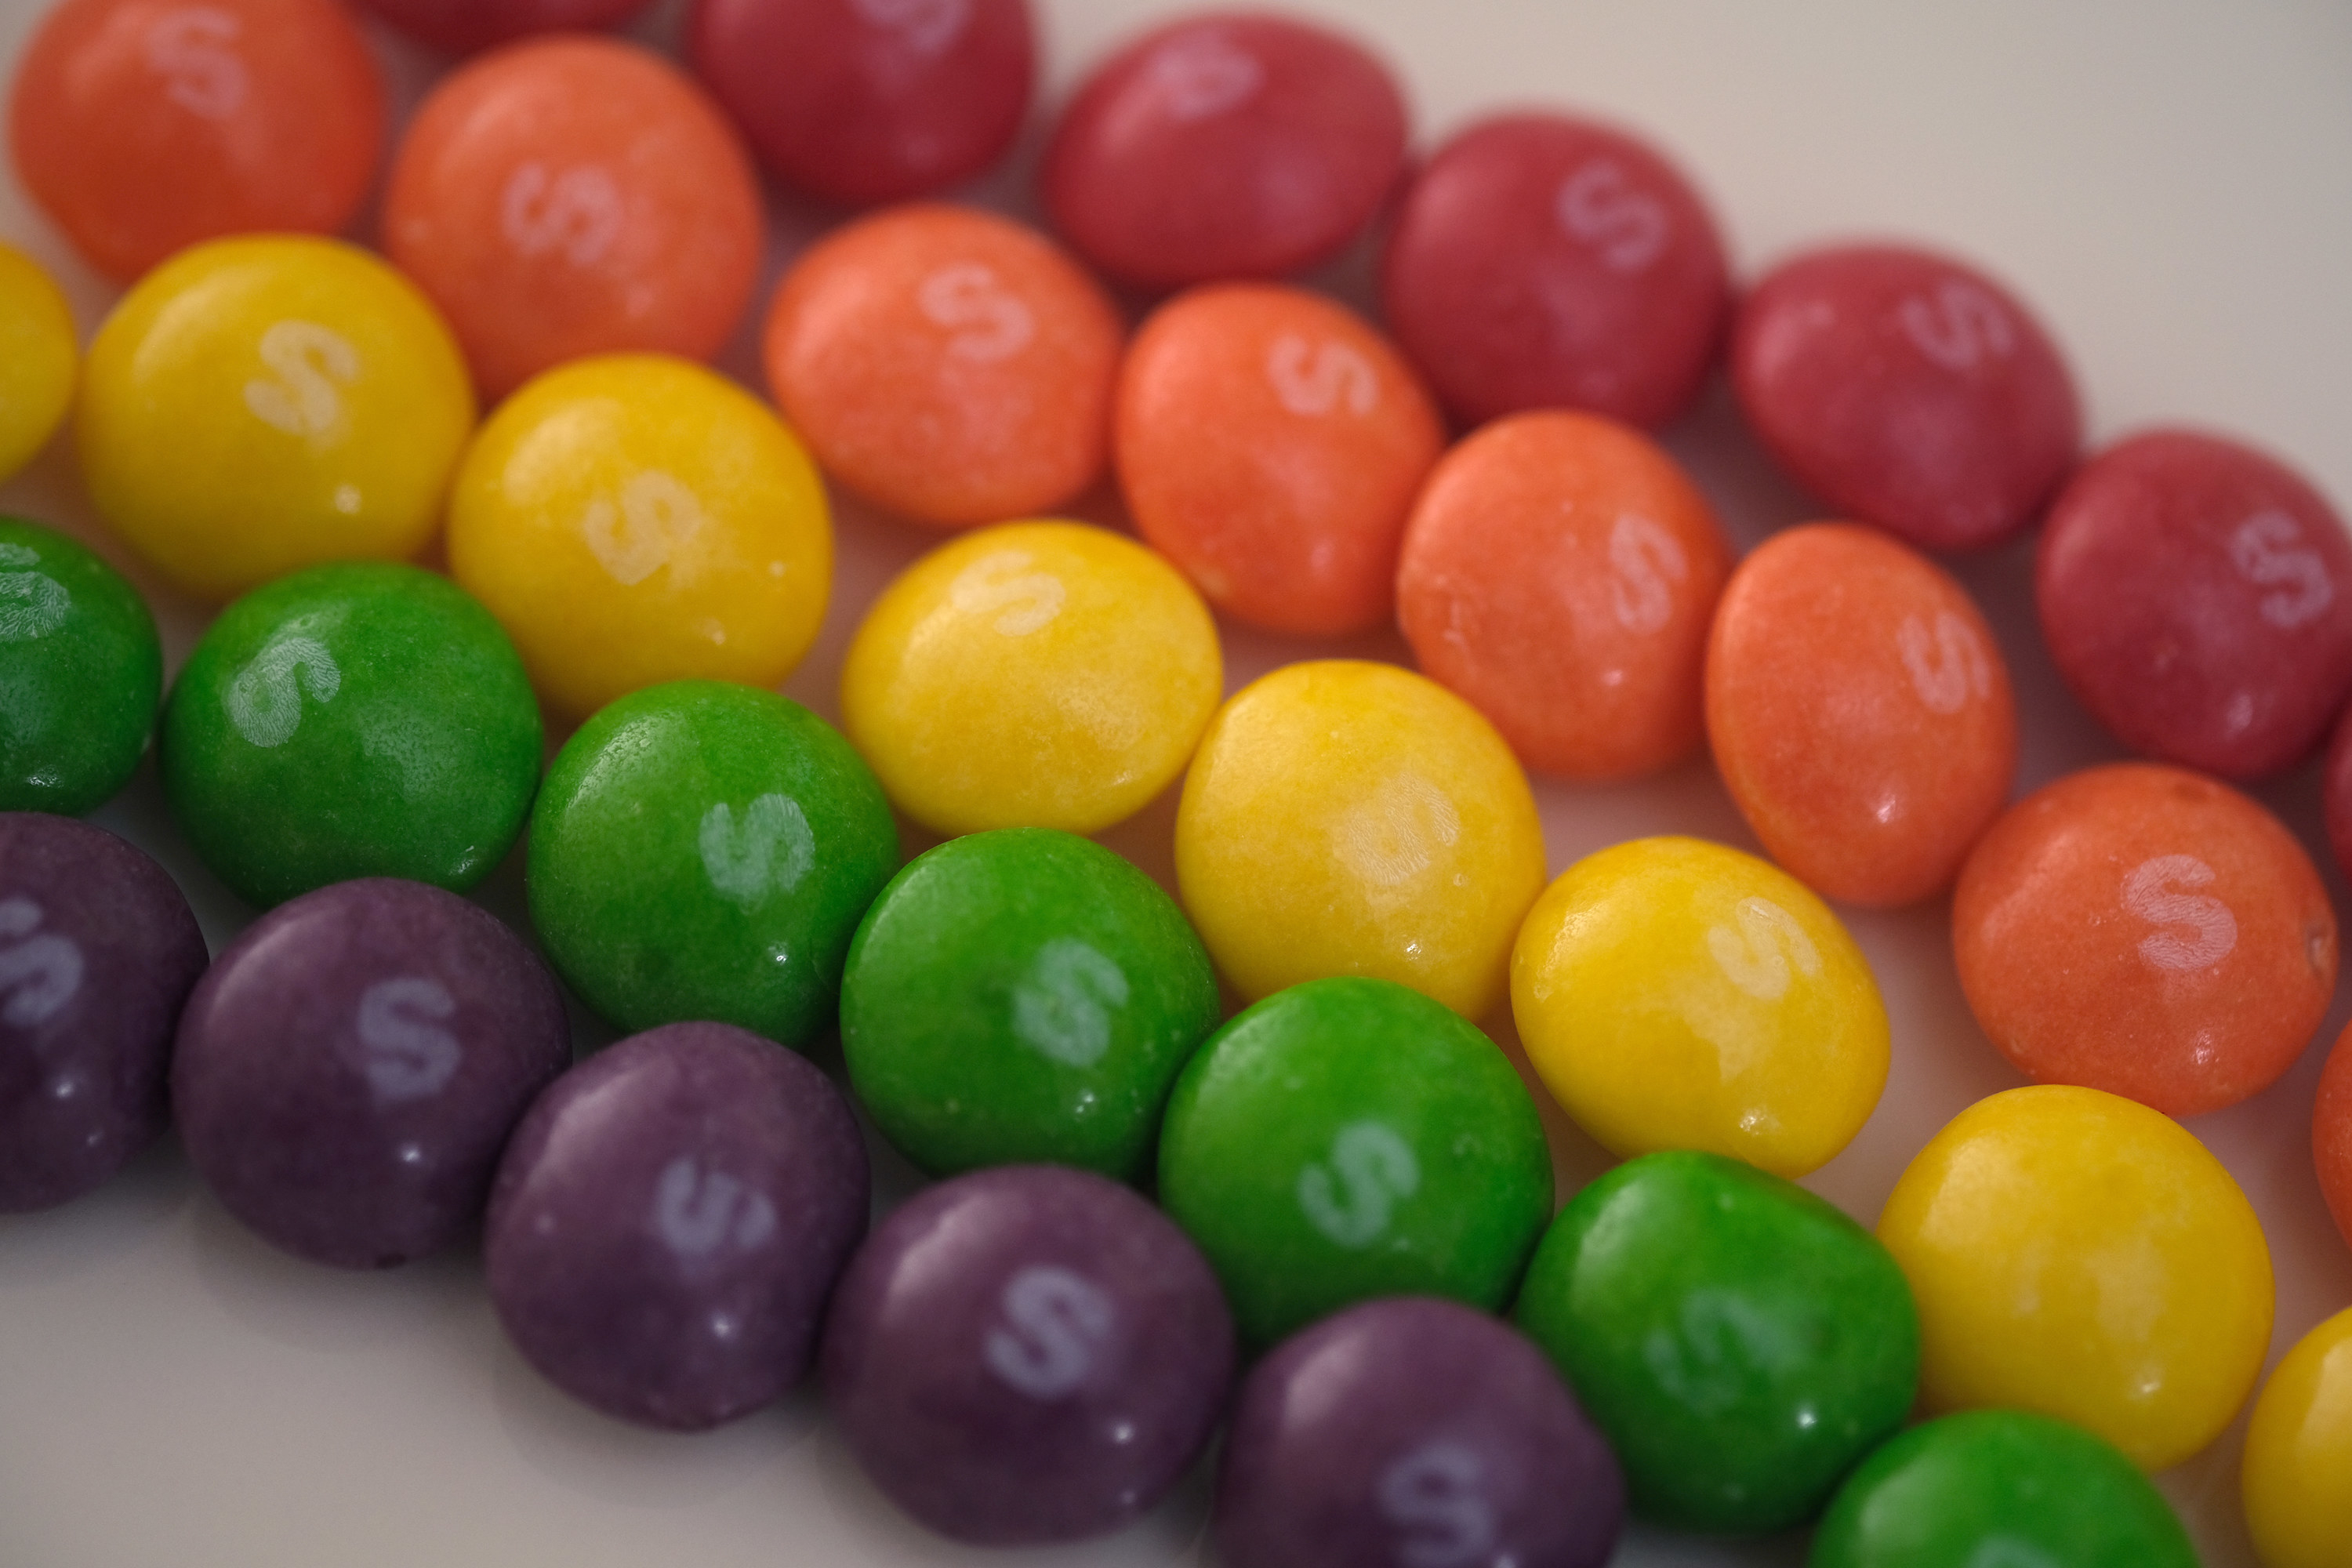 Skittles arranged in a rainbow pattern